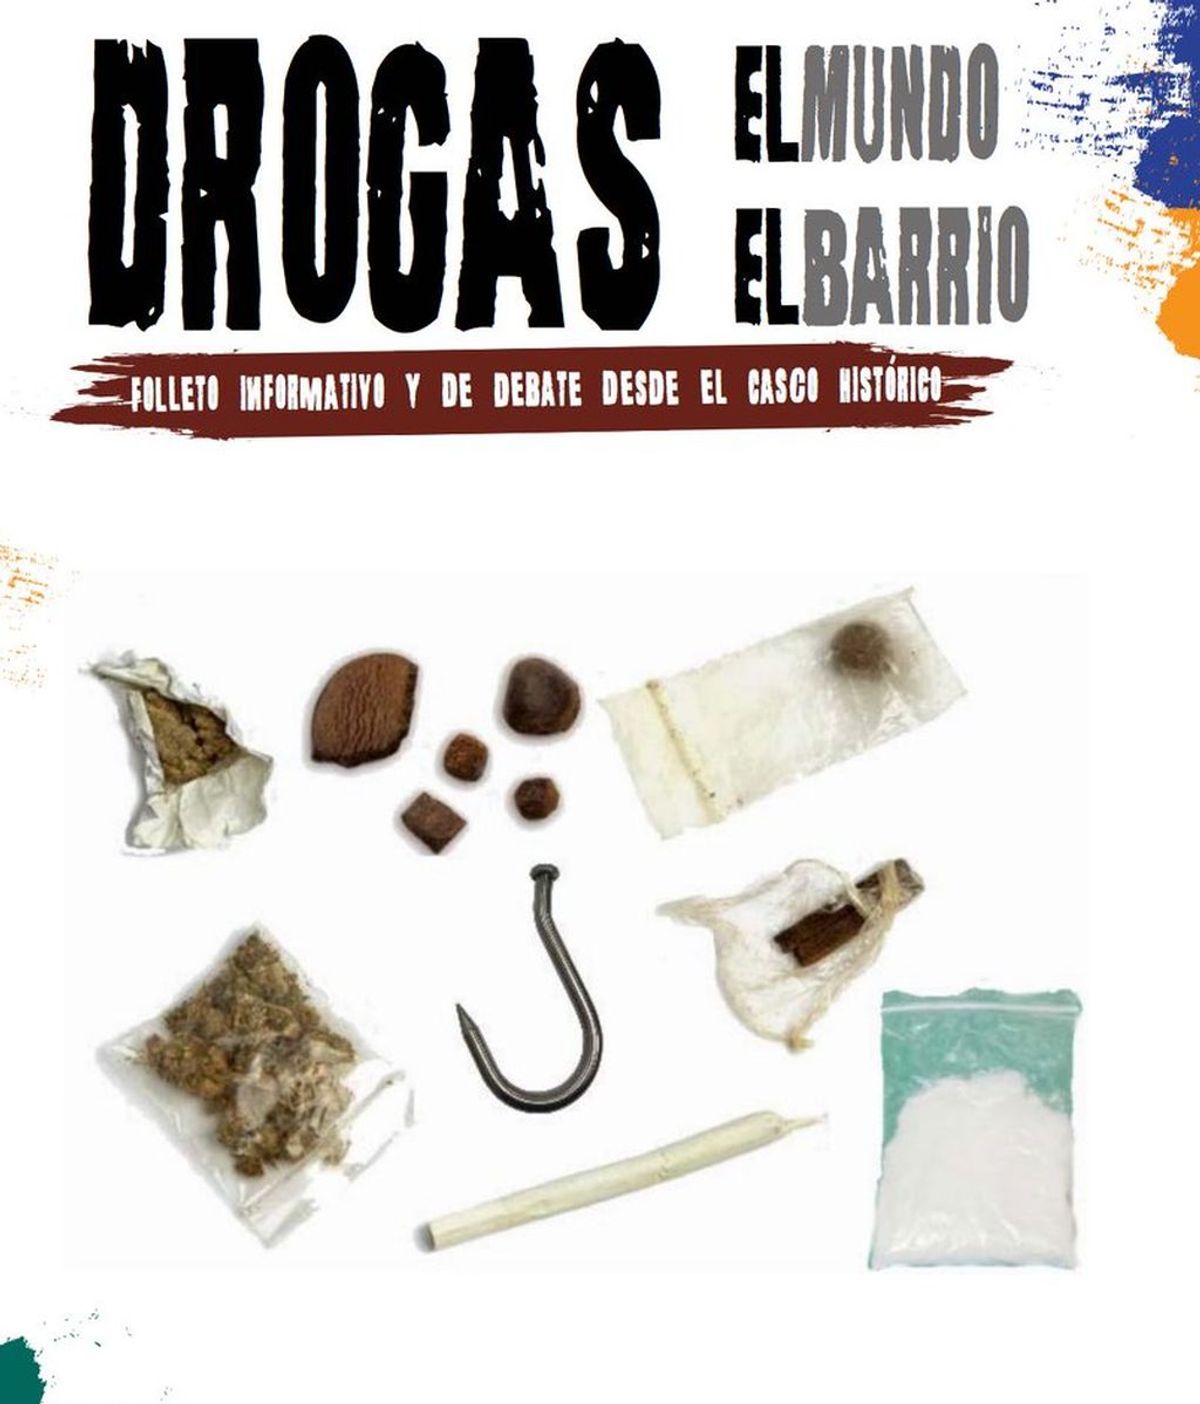 El Ayuntamiento de Zaragoza edita un folleto en el que aconseja el modo adecuado de consumir drogas